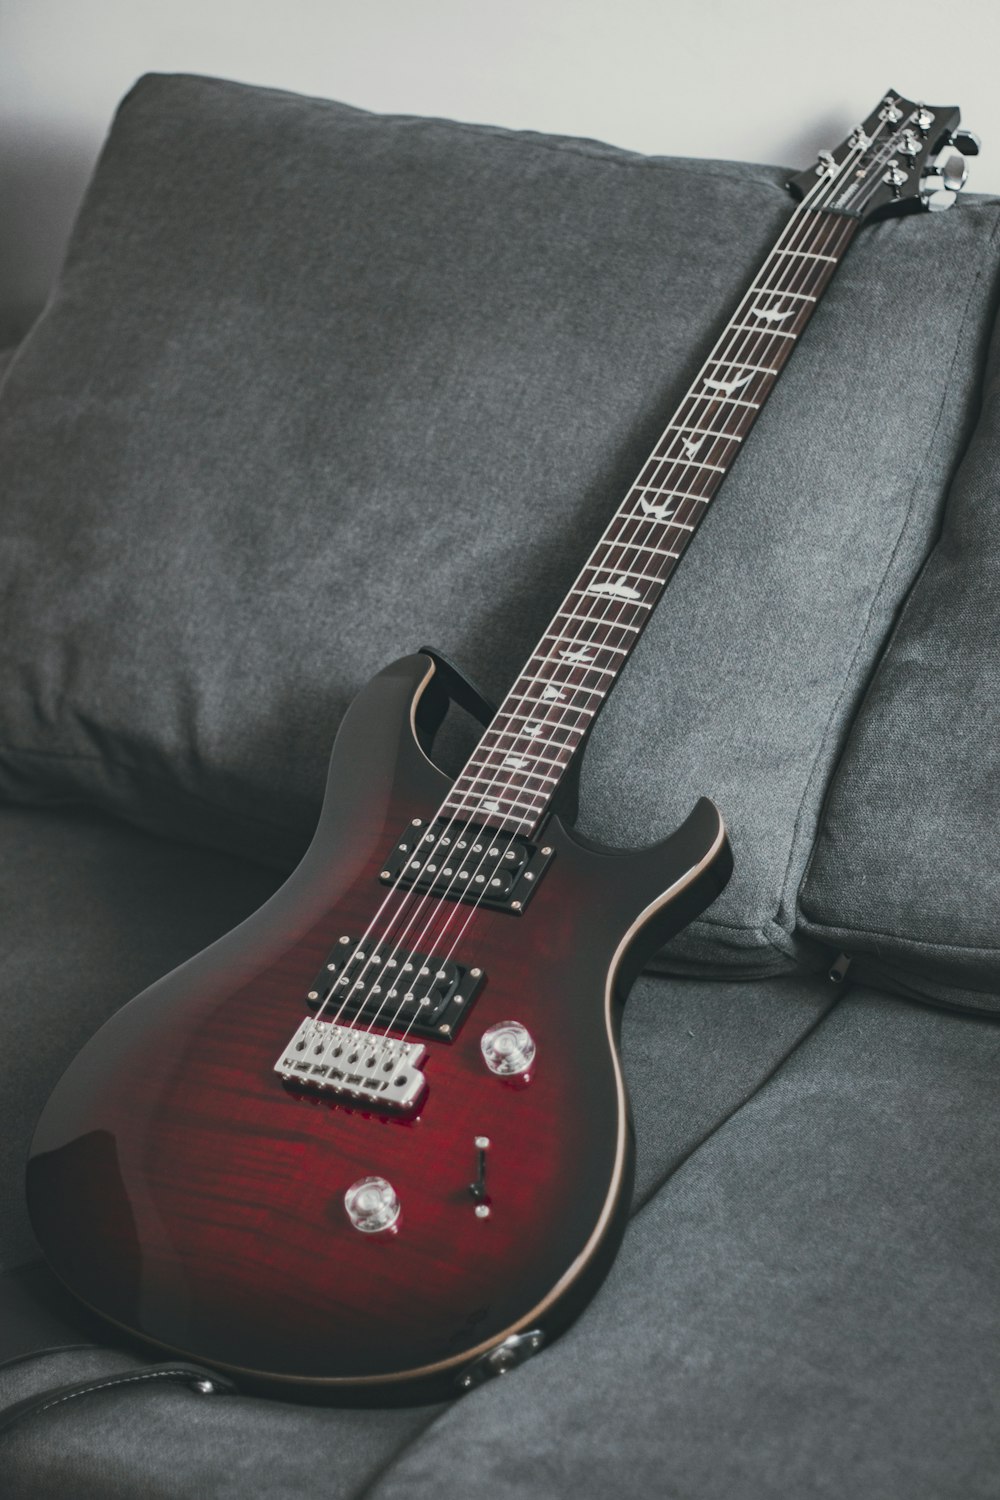 Guitare électrique rouge et blanche sur textile noir